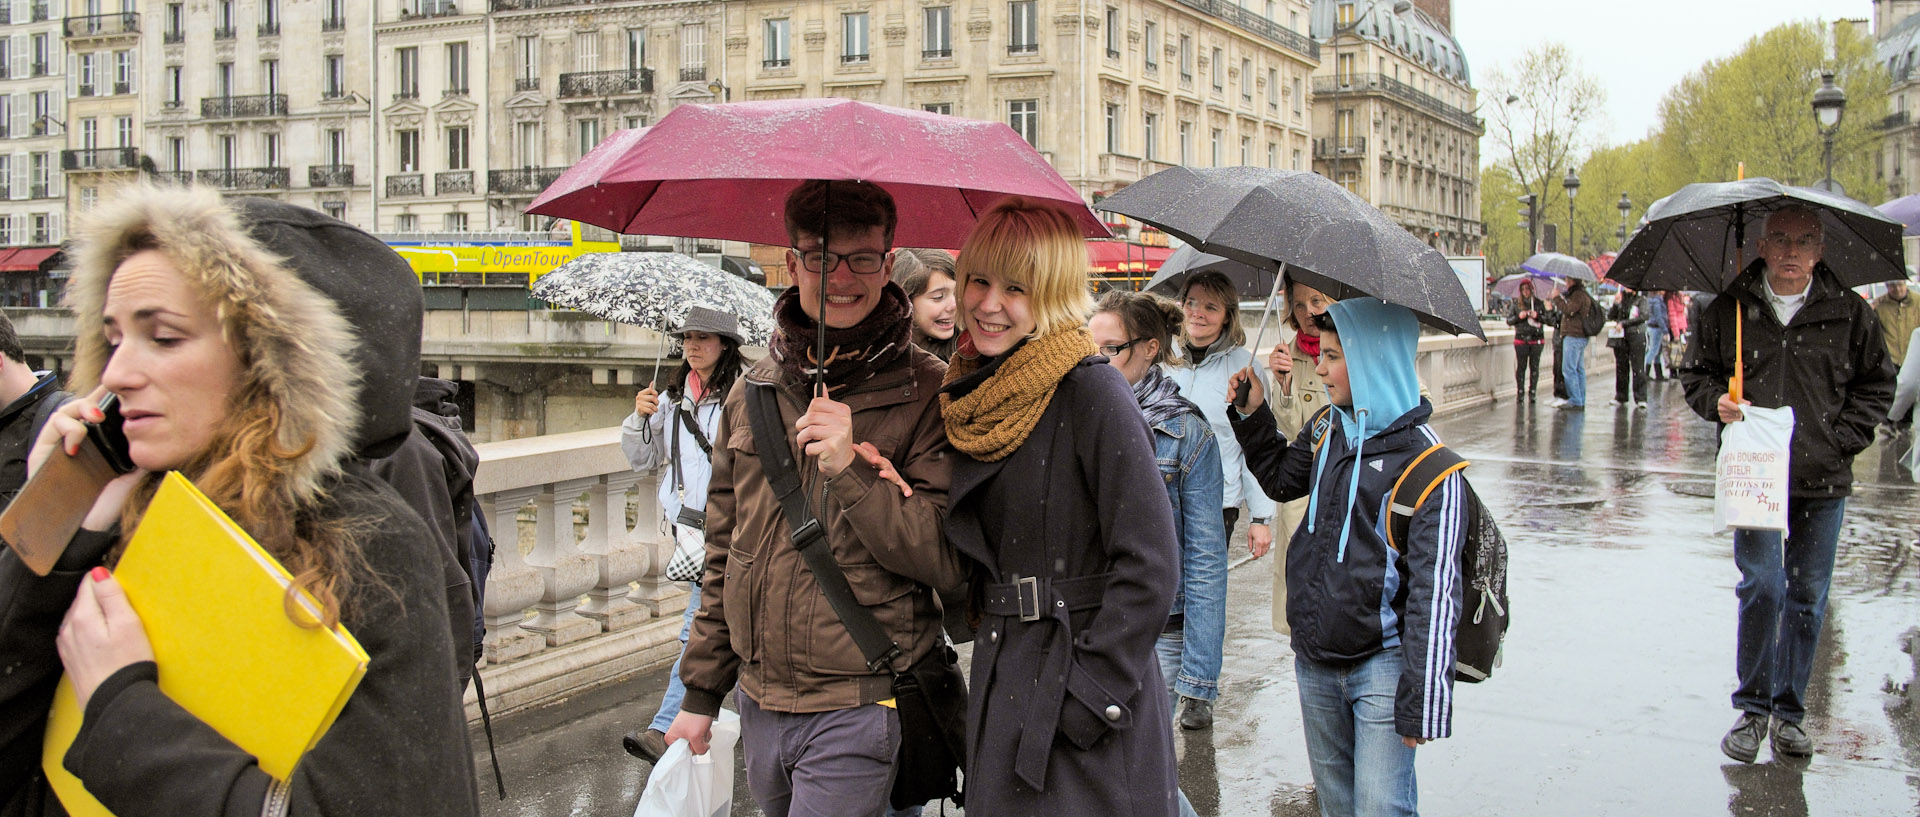 Touristes sous des parapluies, sur le pont Saint-Michel, à Paris.